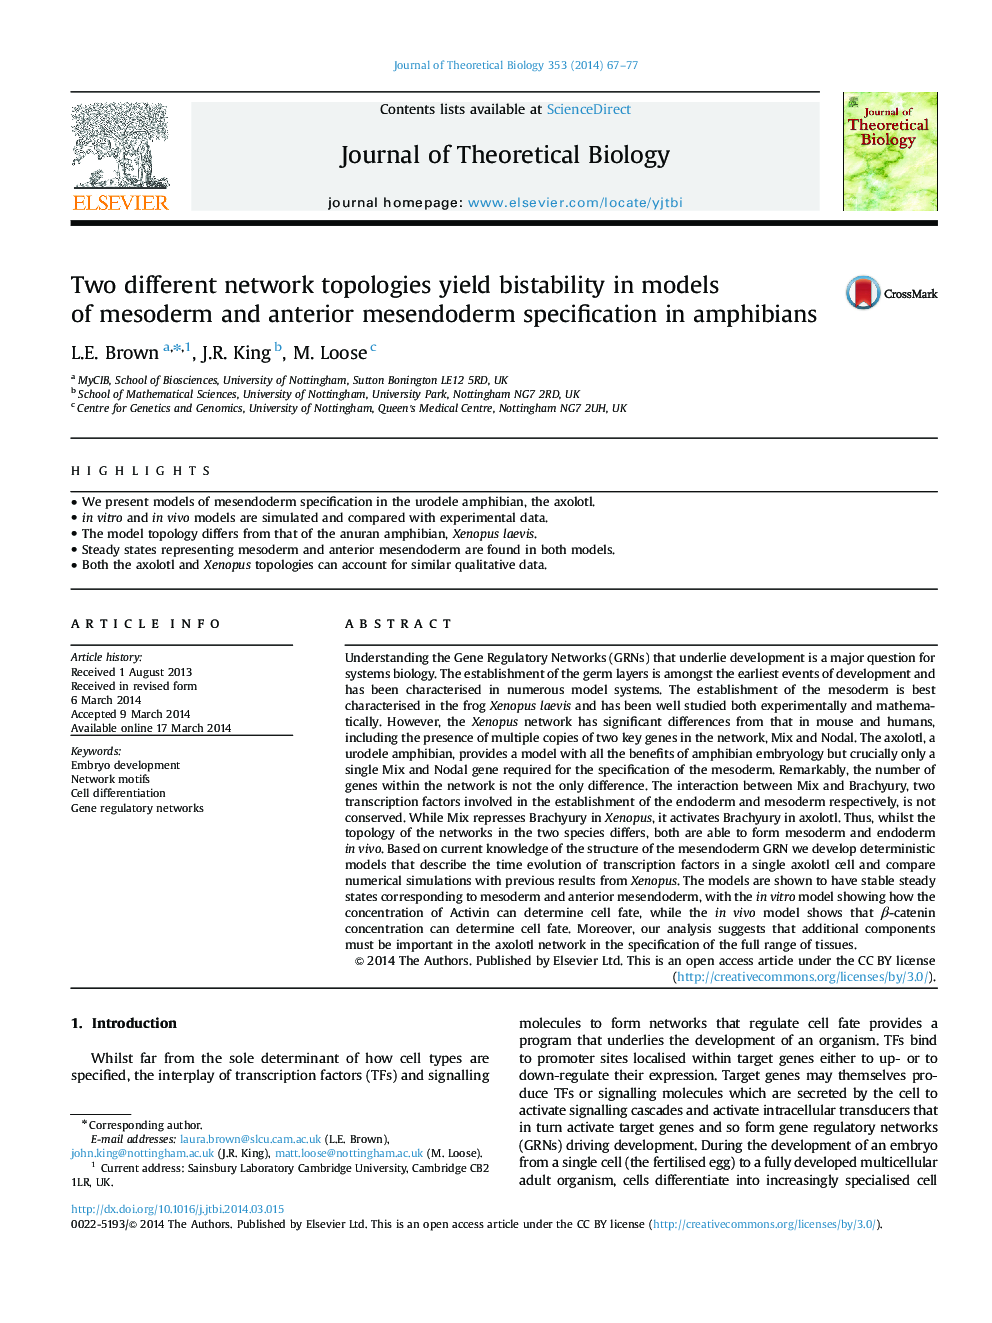 دو توپولوژی شبکه های مختلف، در مدل های مزودرم و مشخصات مزاندودرم قدامی در دوزیستان، دوام می یابند 